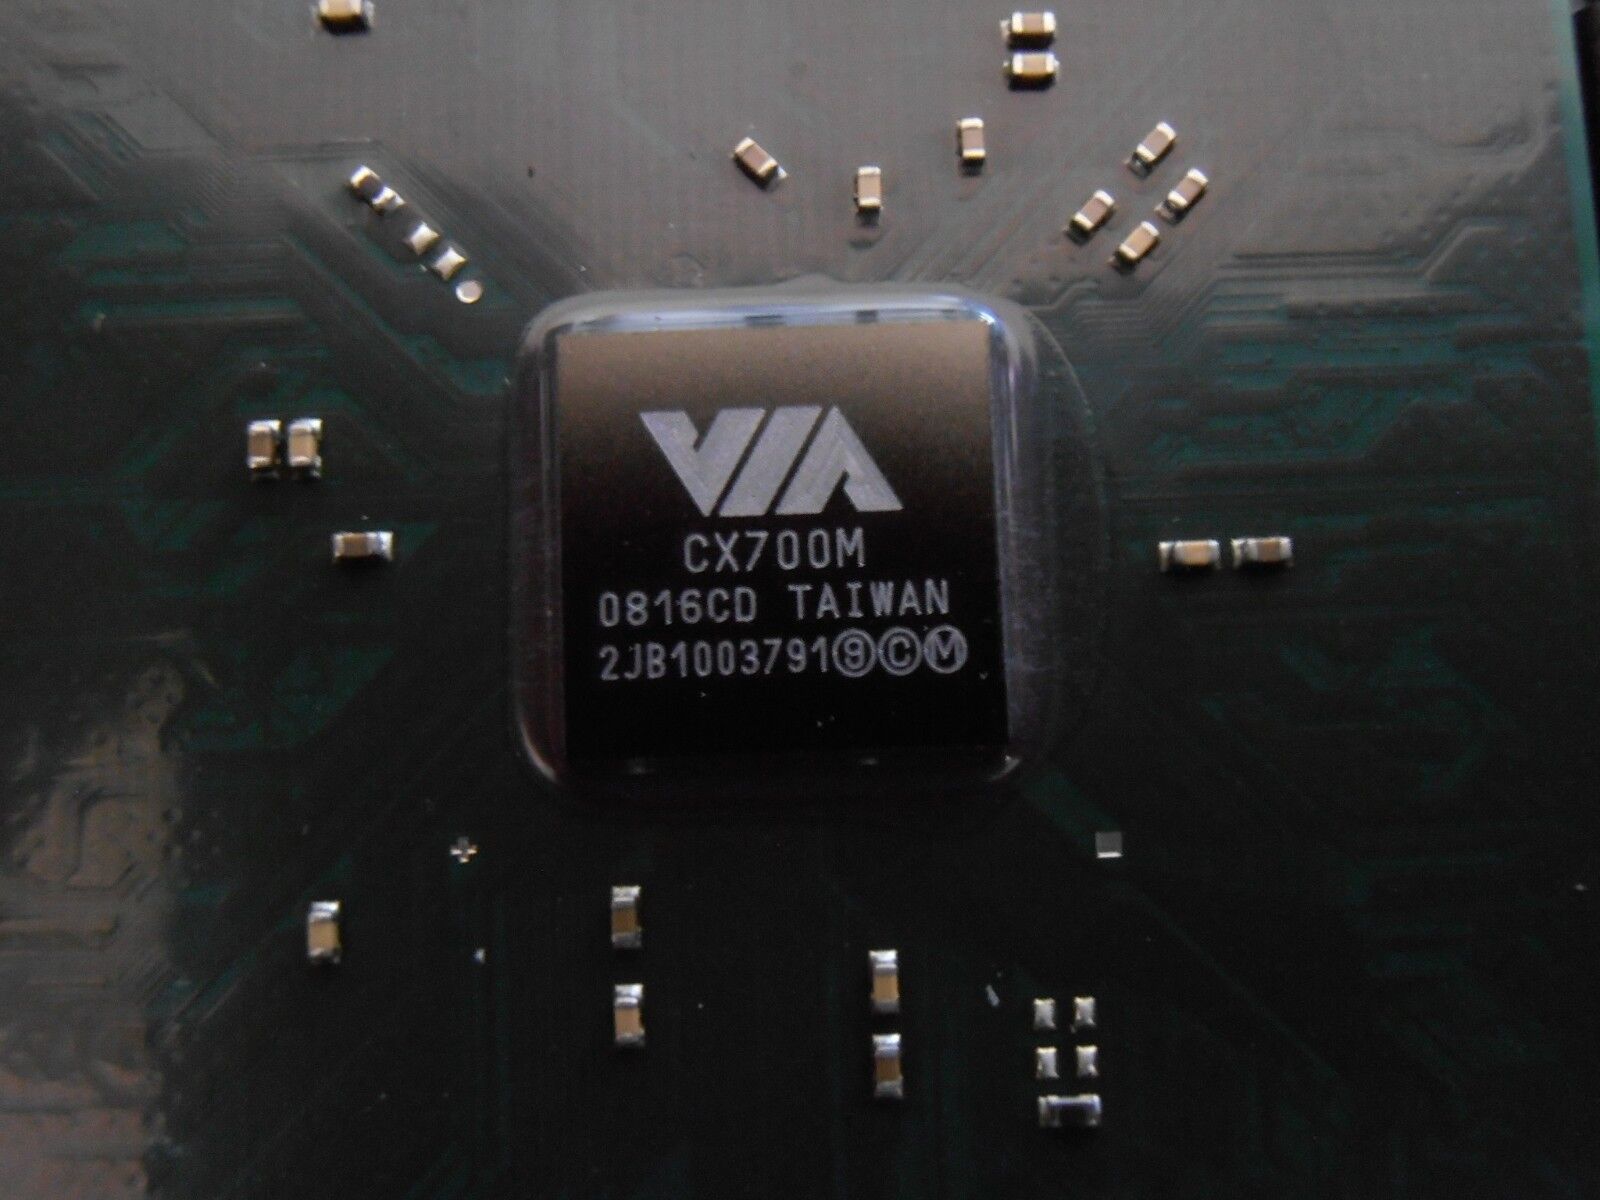 CX700M    system media processor   BGA  VIA